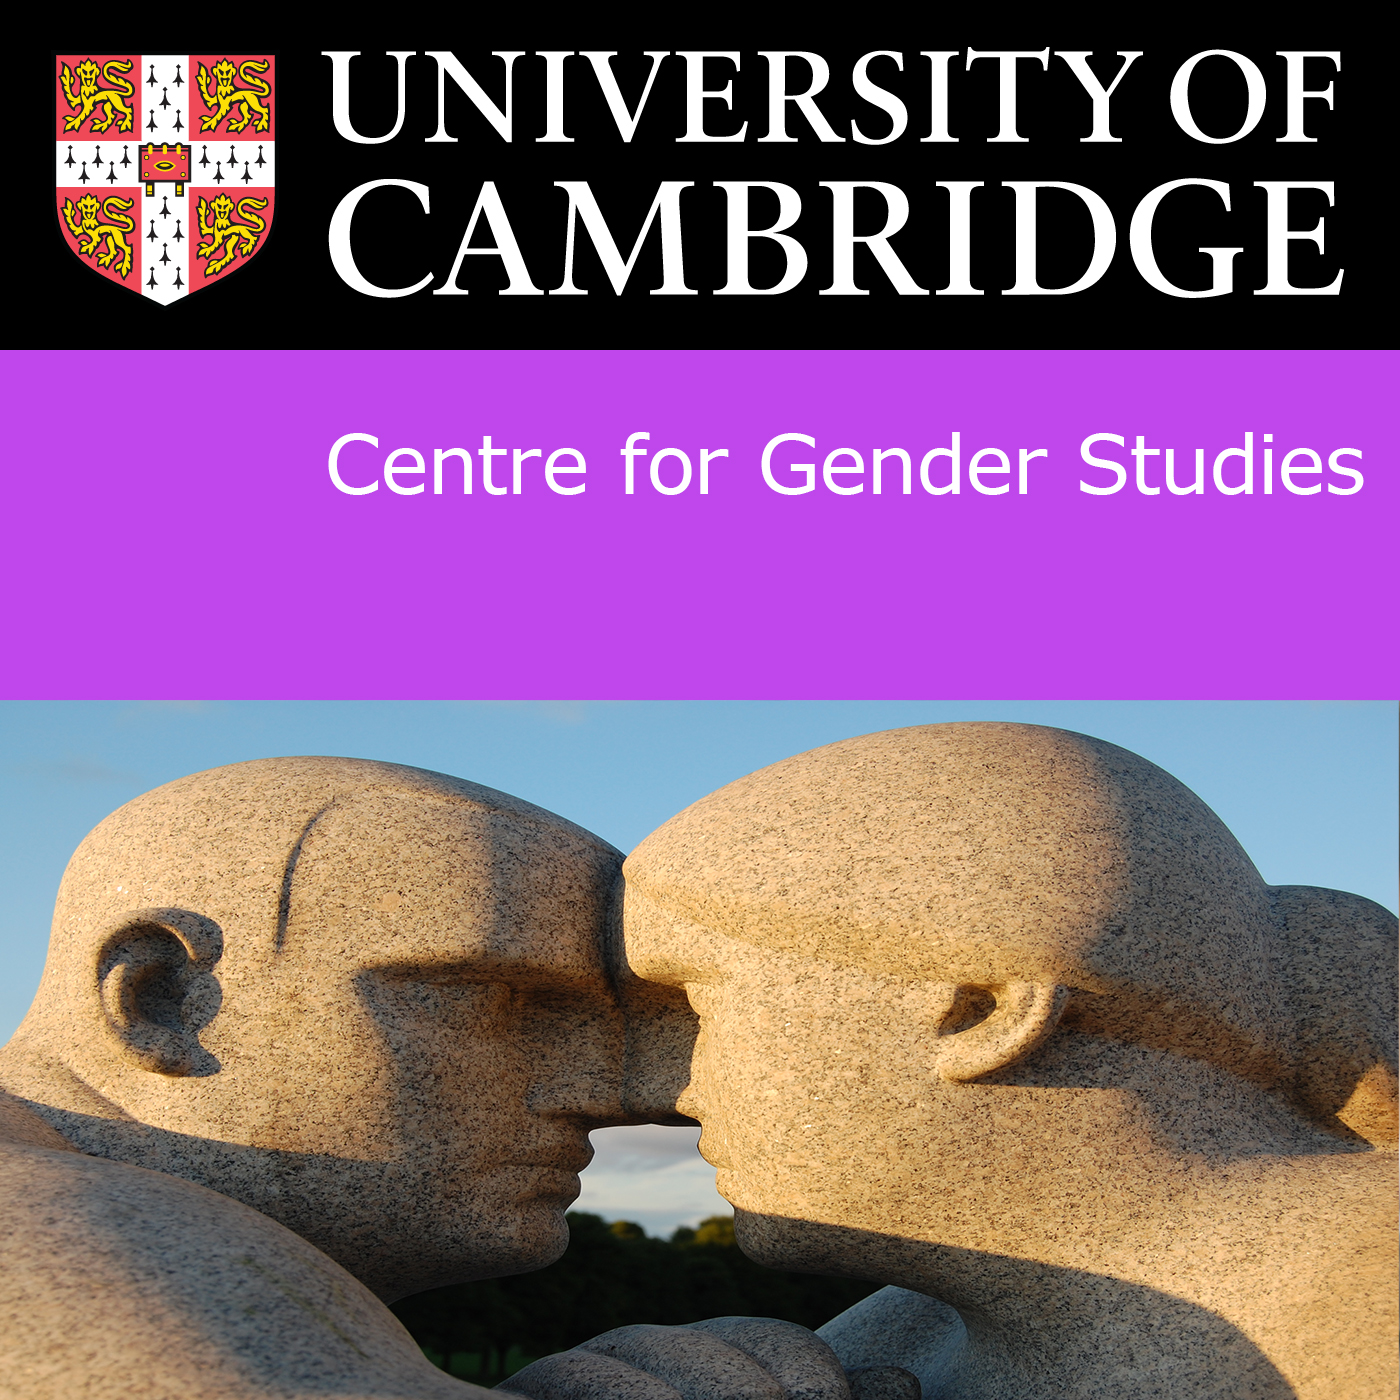 Centre for Gender Studies's image